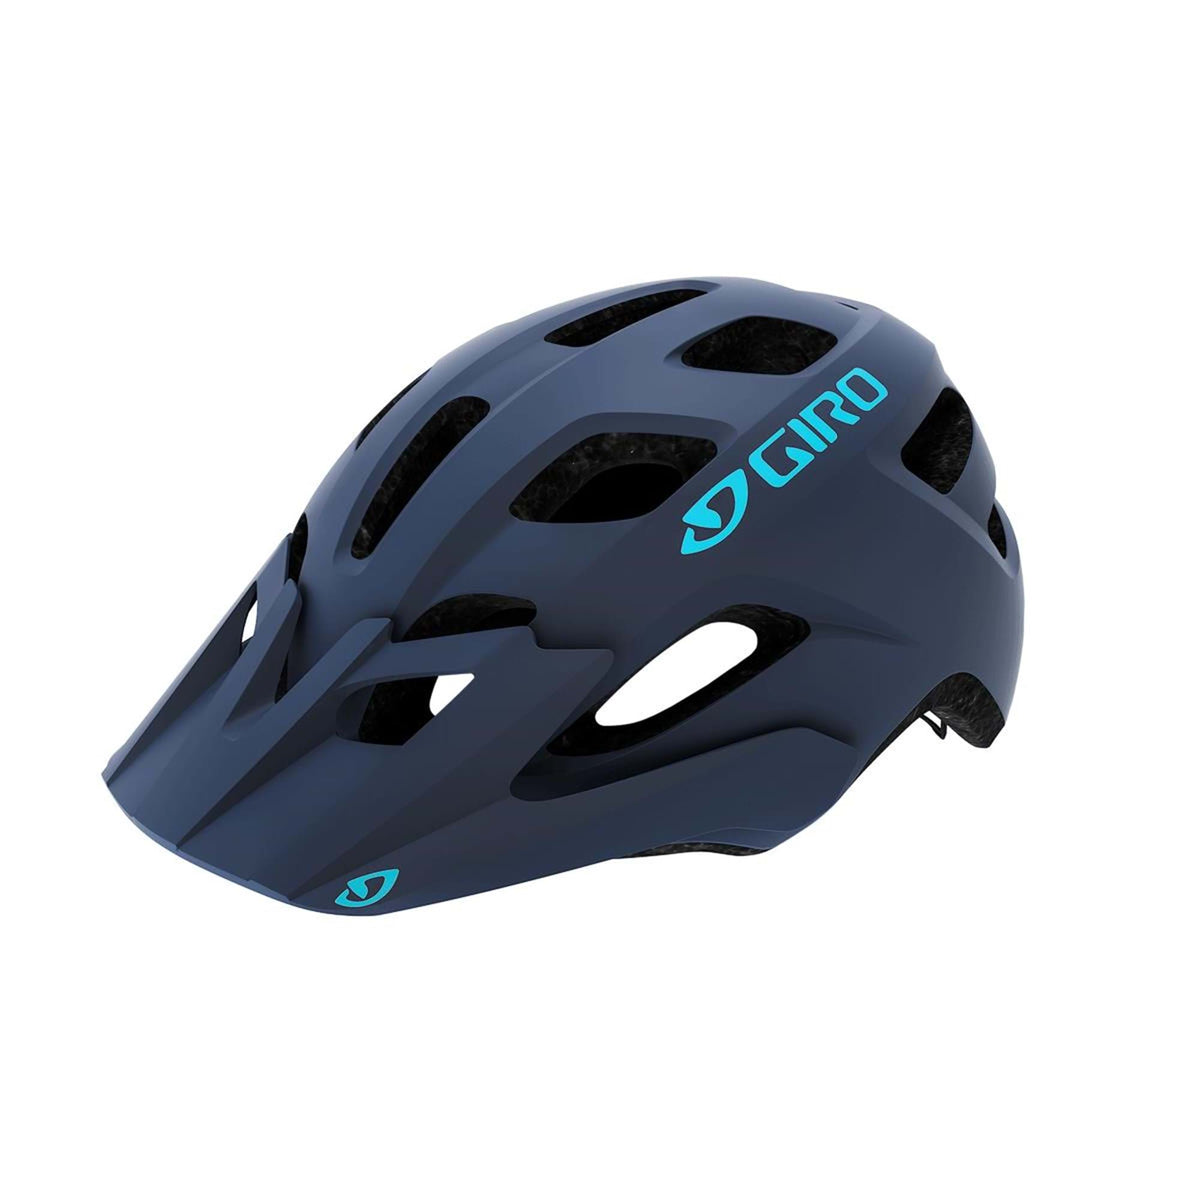 Giro Verce Women's Helmet